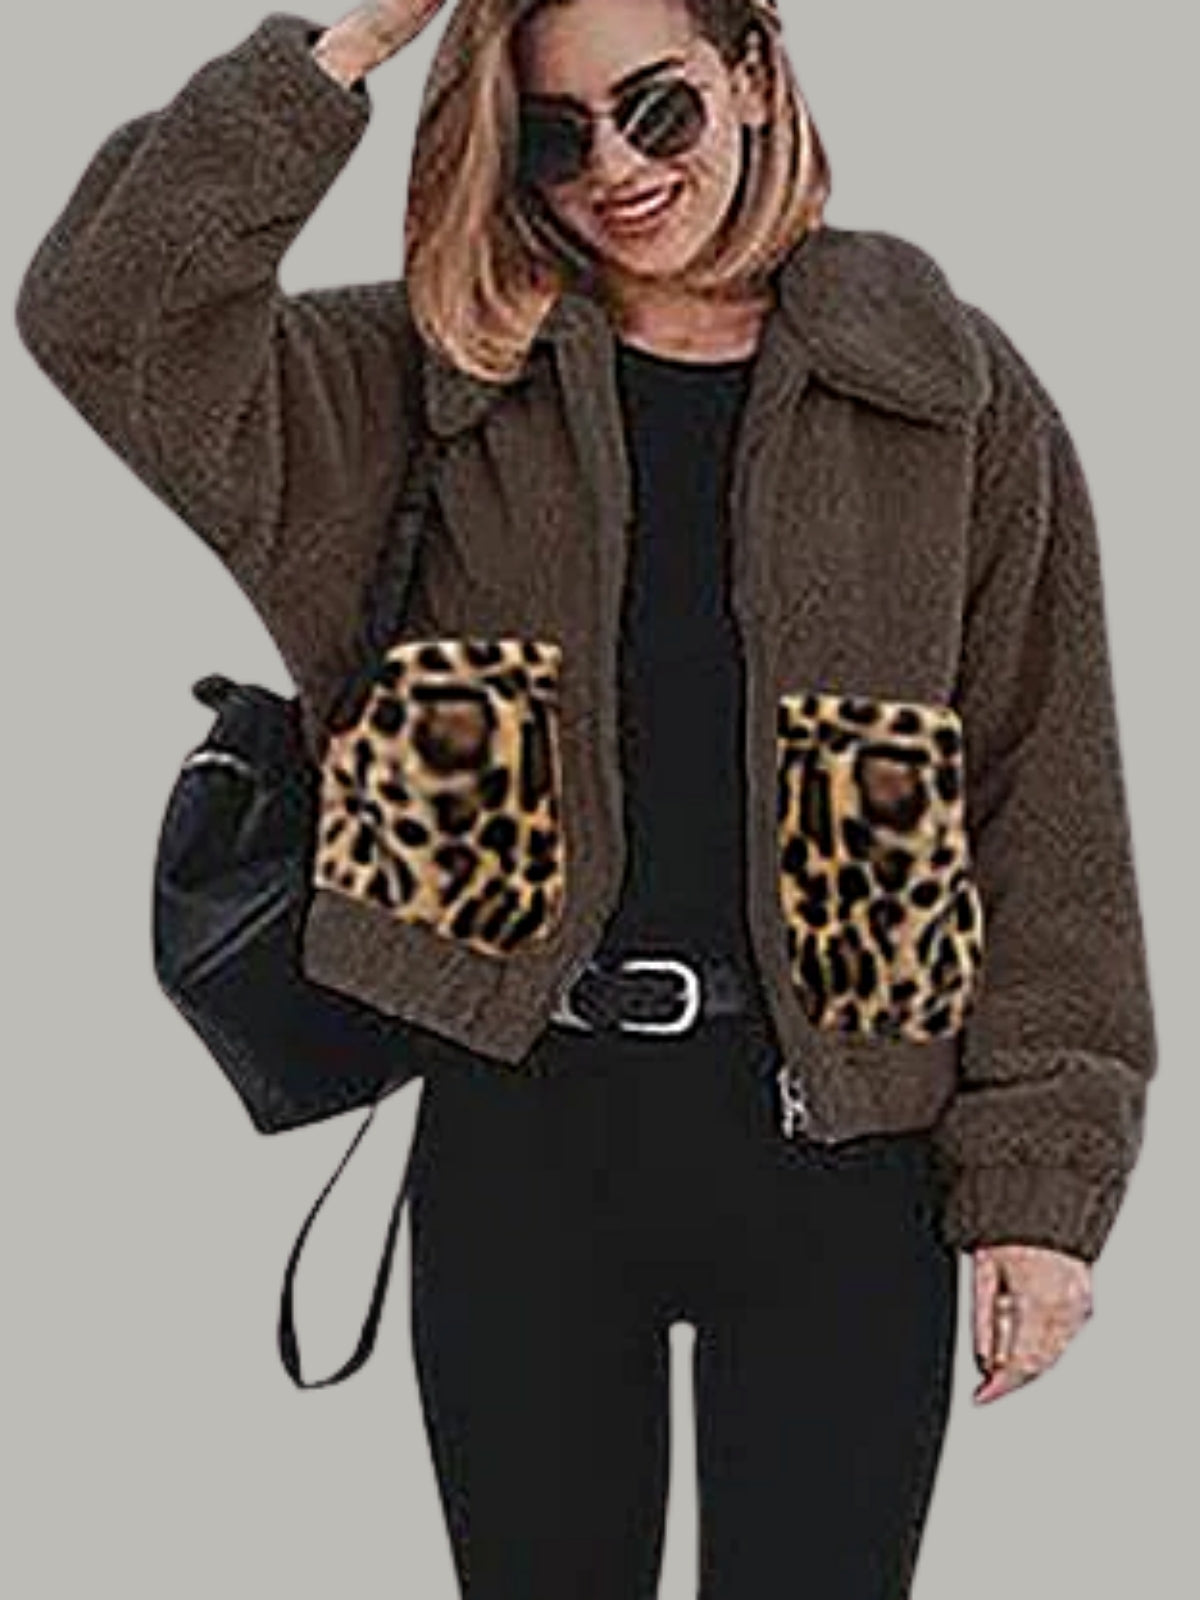 Women's Fluffy Fleece jacket with Leopard Pockets - Mia Belle Girls